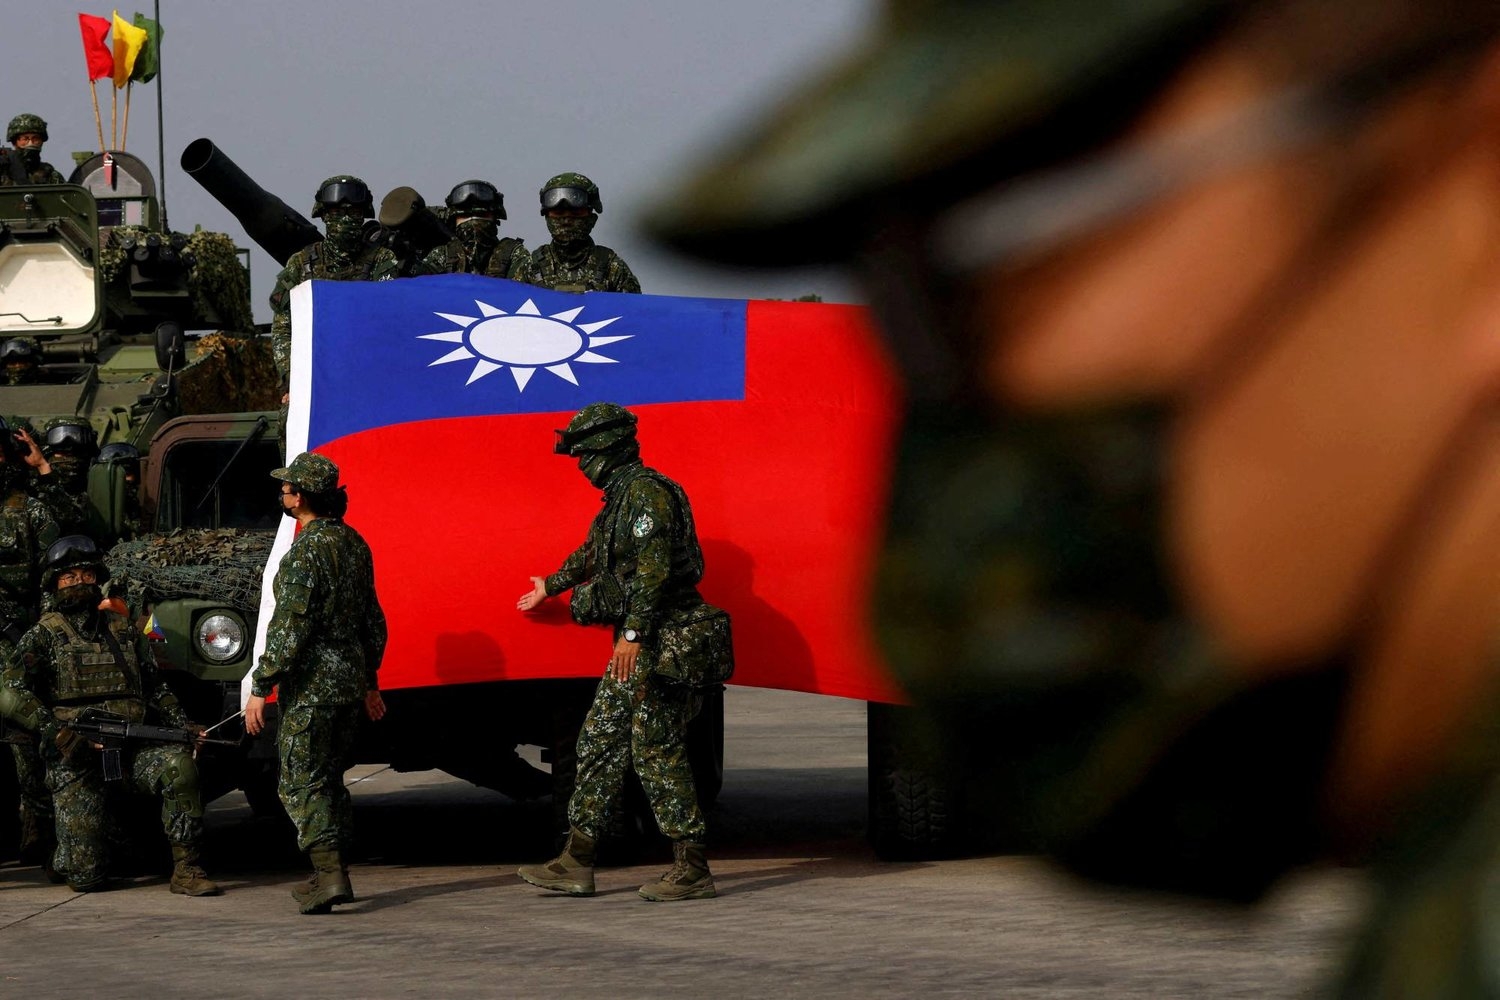 بكين: مبيعات الأسلحة الأميركية تدفع تايوان إلى كارثة